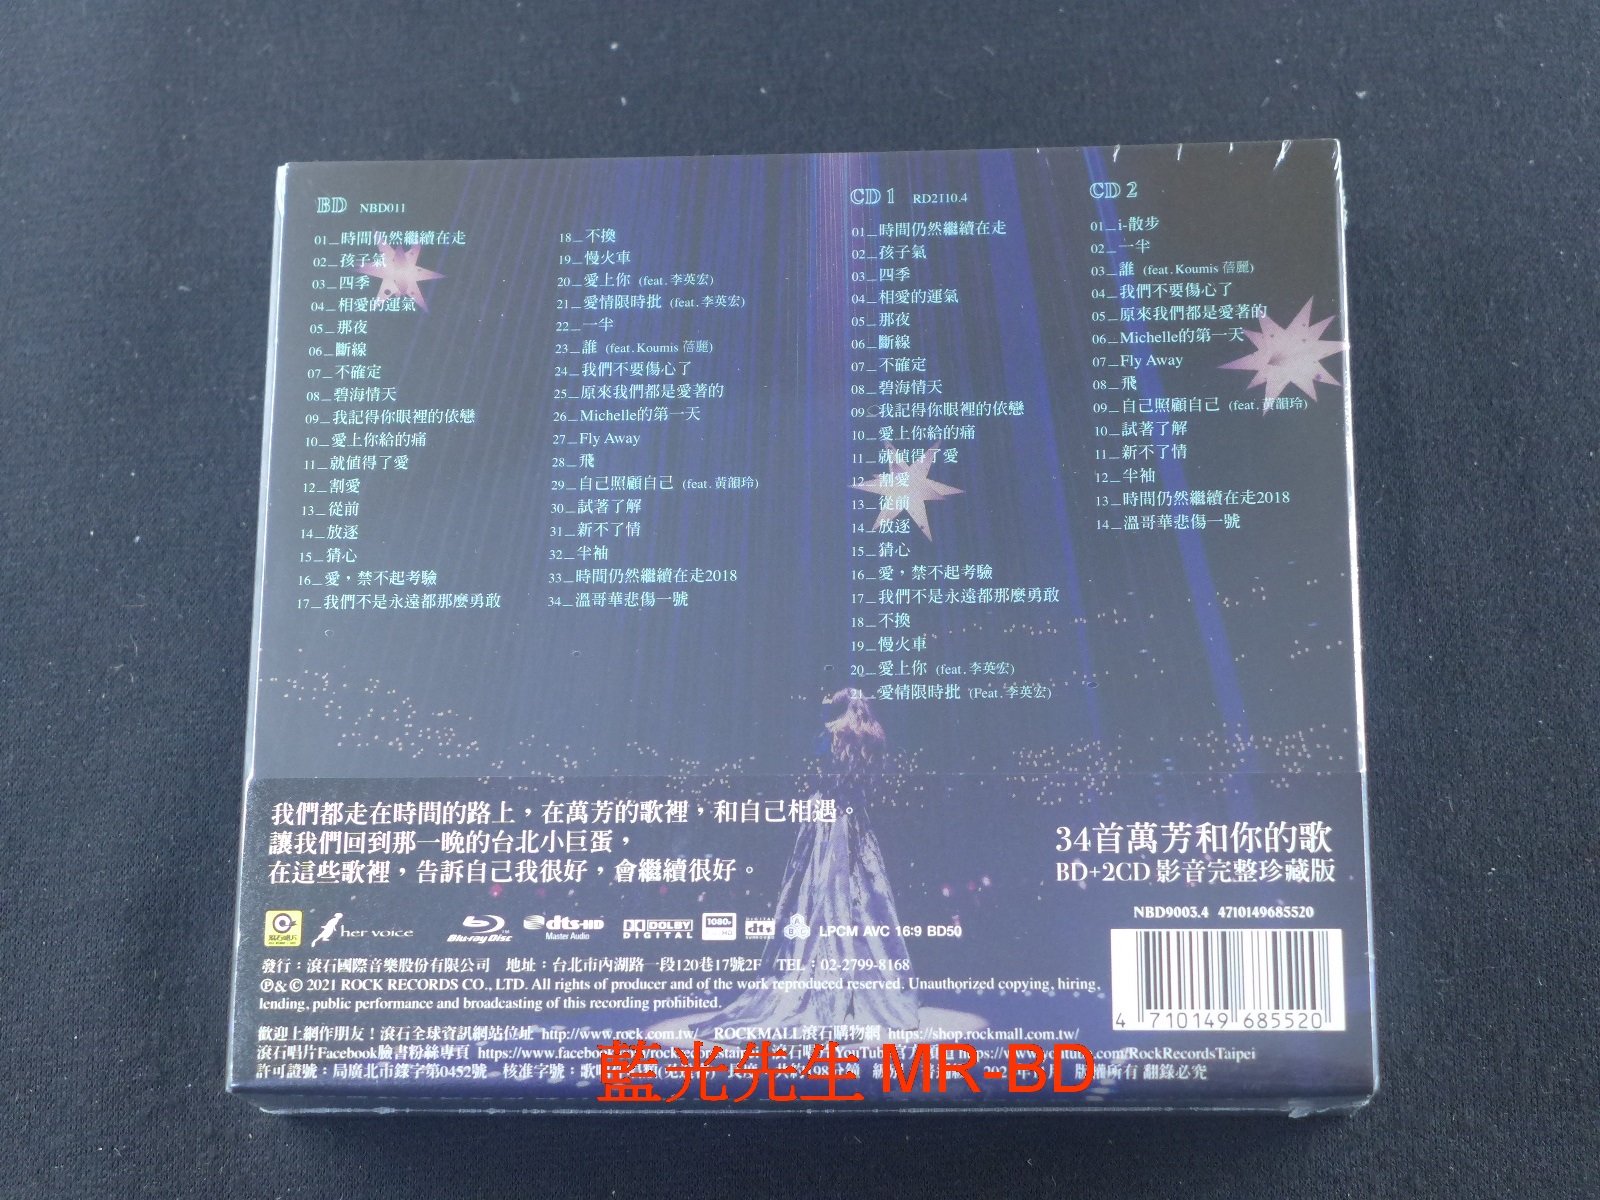 藍光先生BD] 萬芳: 時間仍然繼續在走演唱會BD+2CD 珍藏版Wan Fang Love